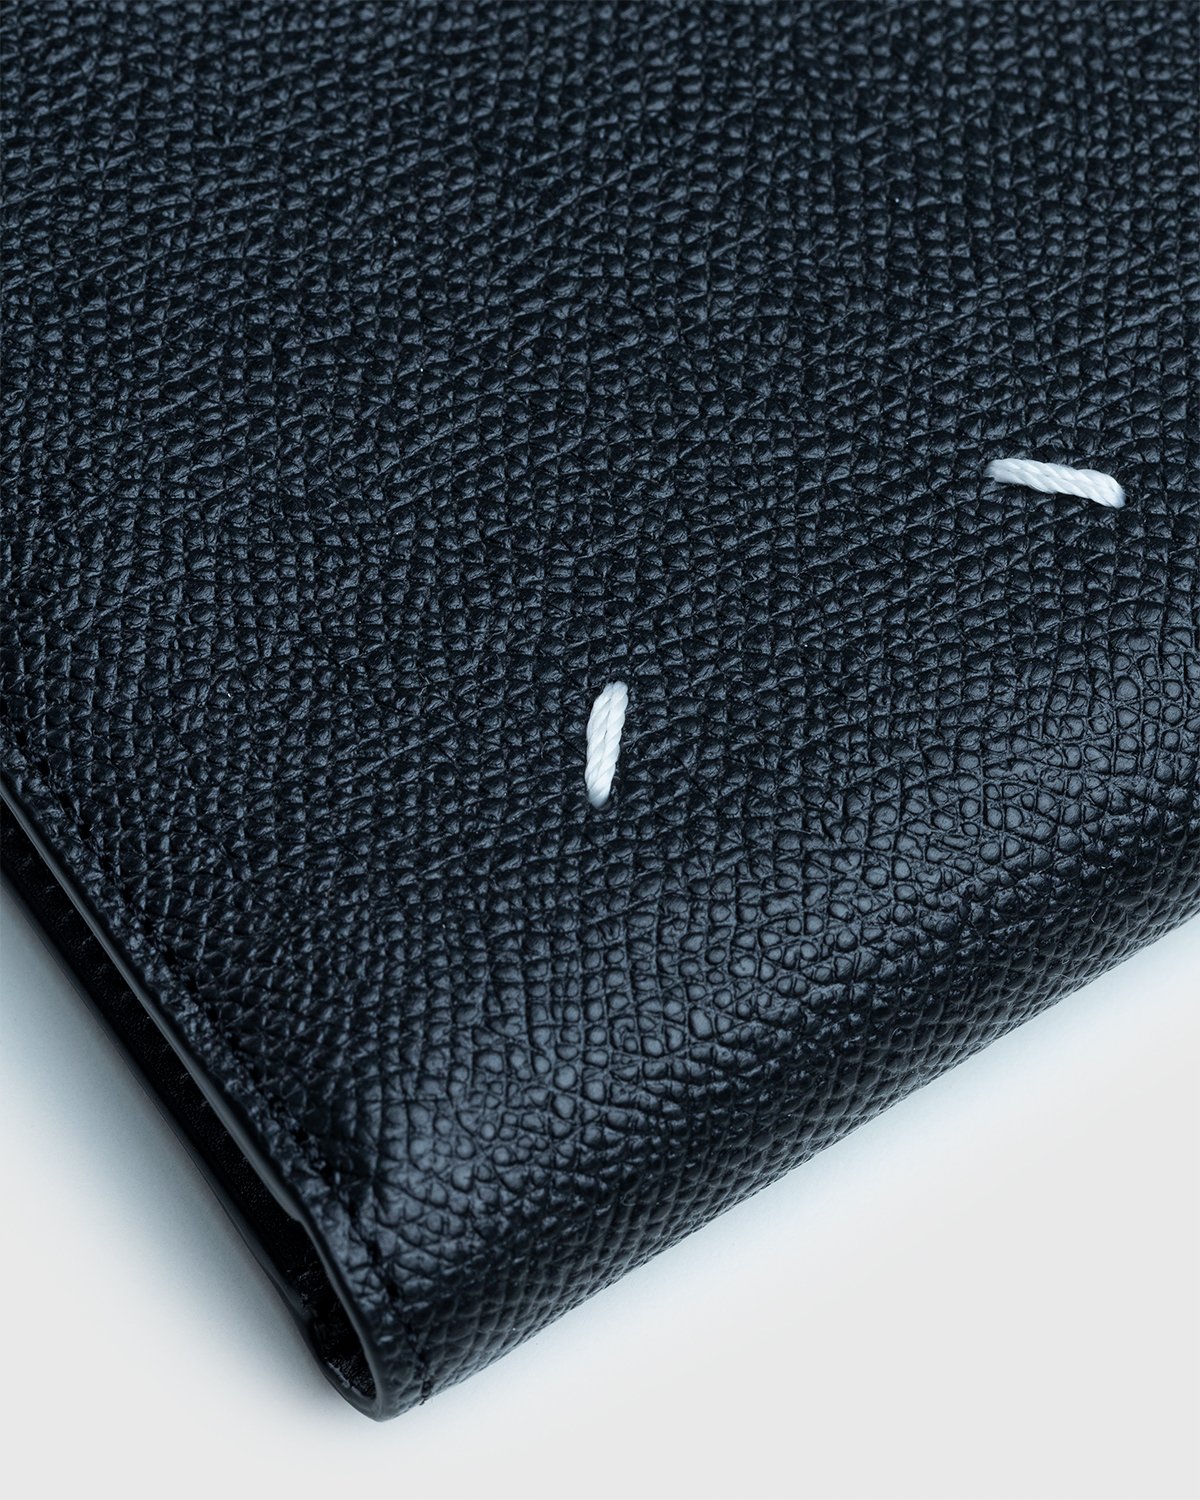 Maison Margiela - Leather Wallet Black - Accessories - Black - Image 4